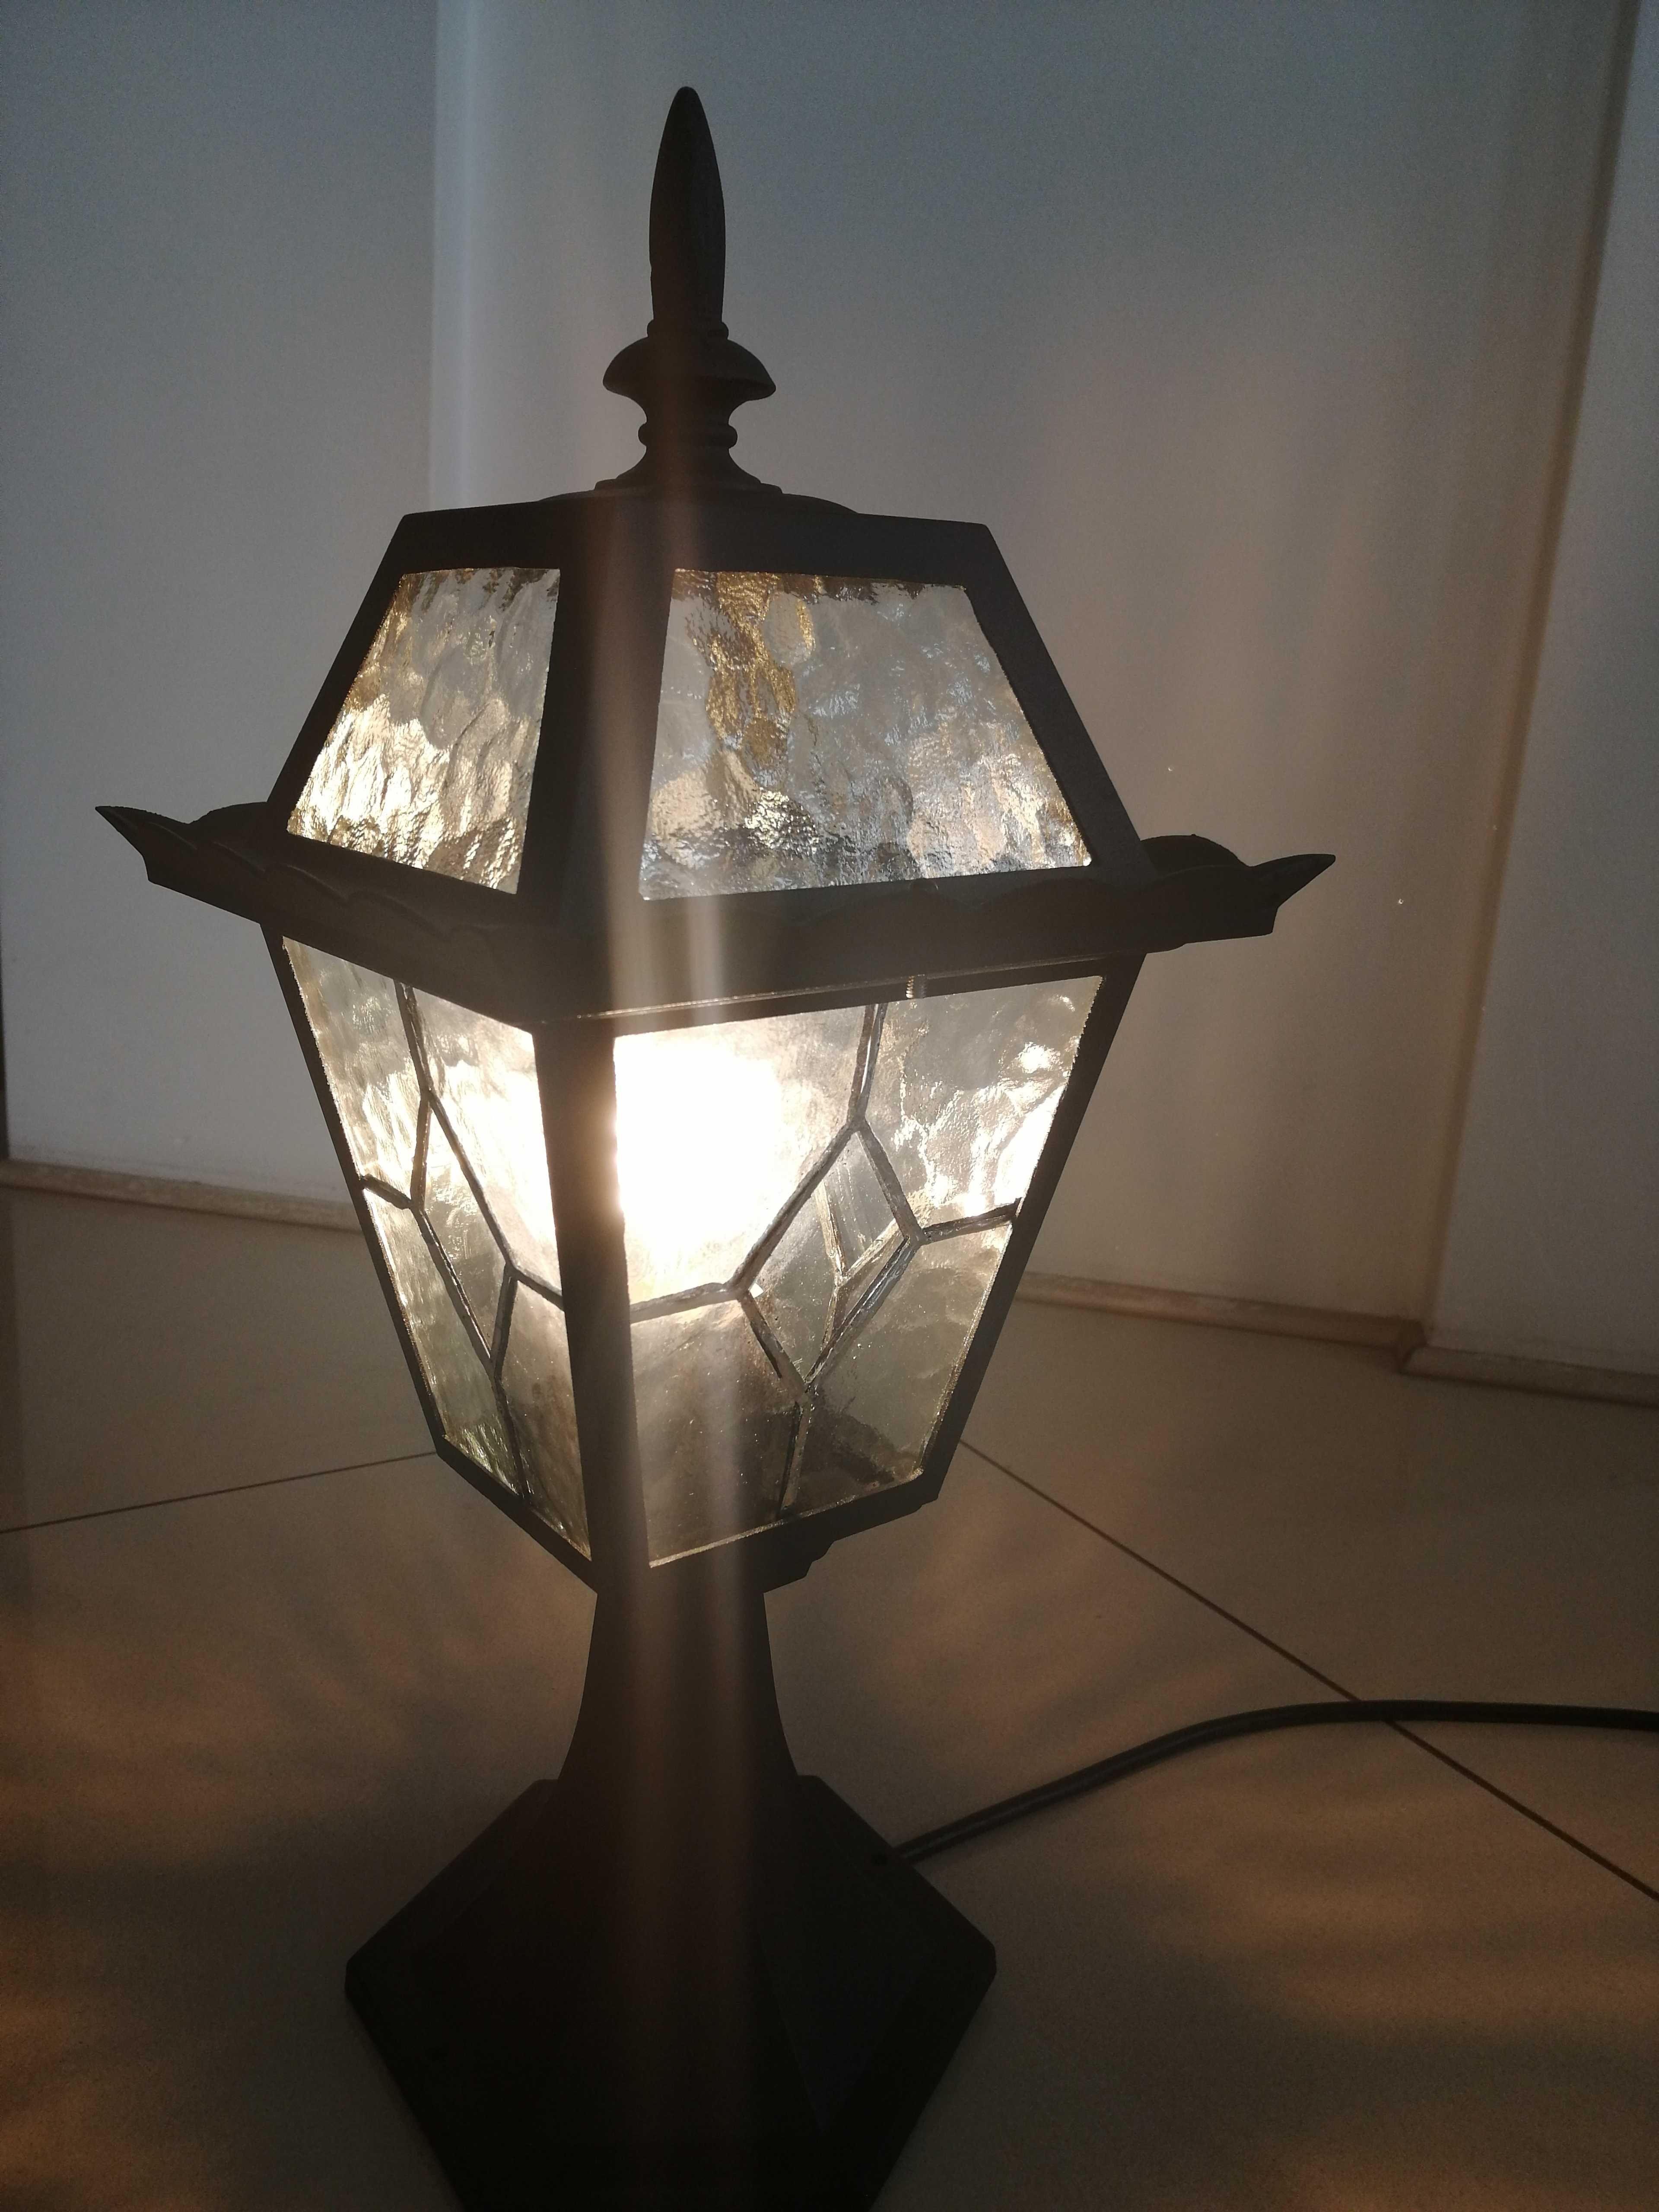 Lampa zewnętrzna aluminiowa, witraż- szkło 4 szt